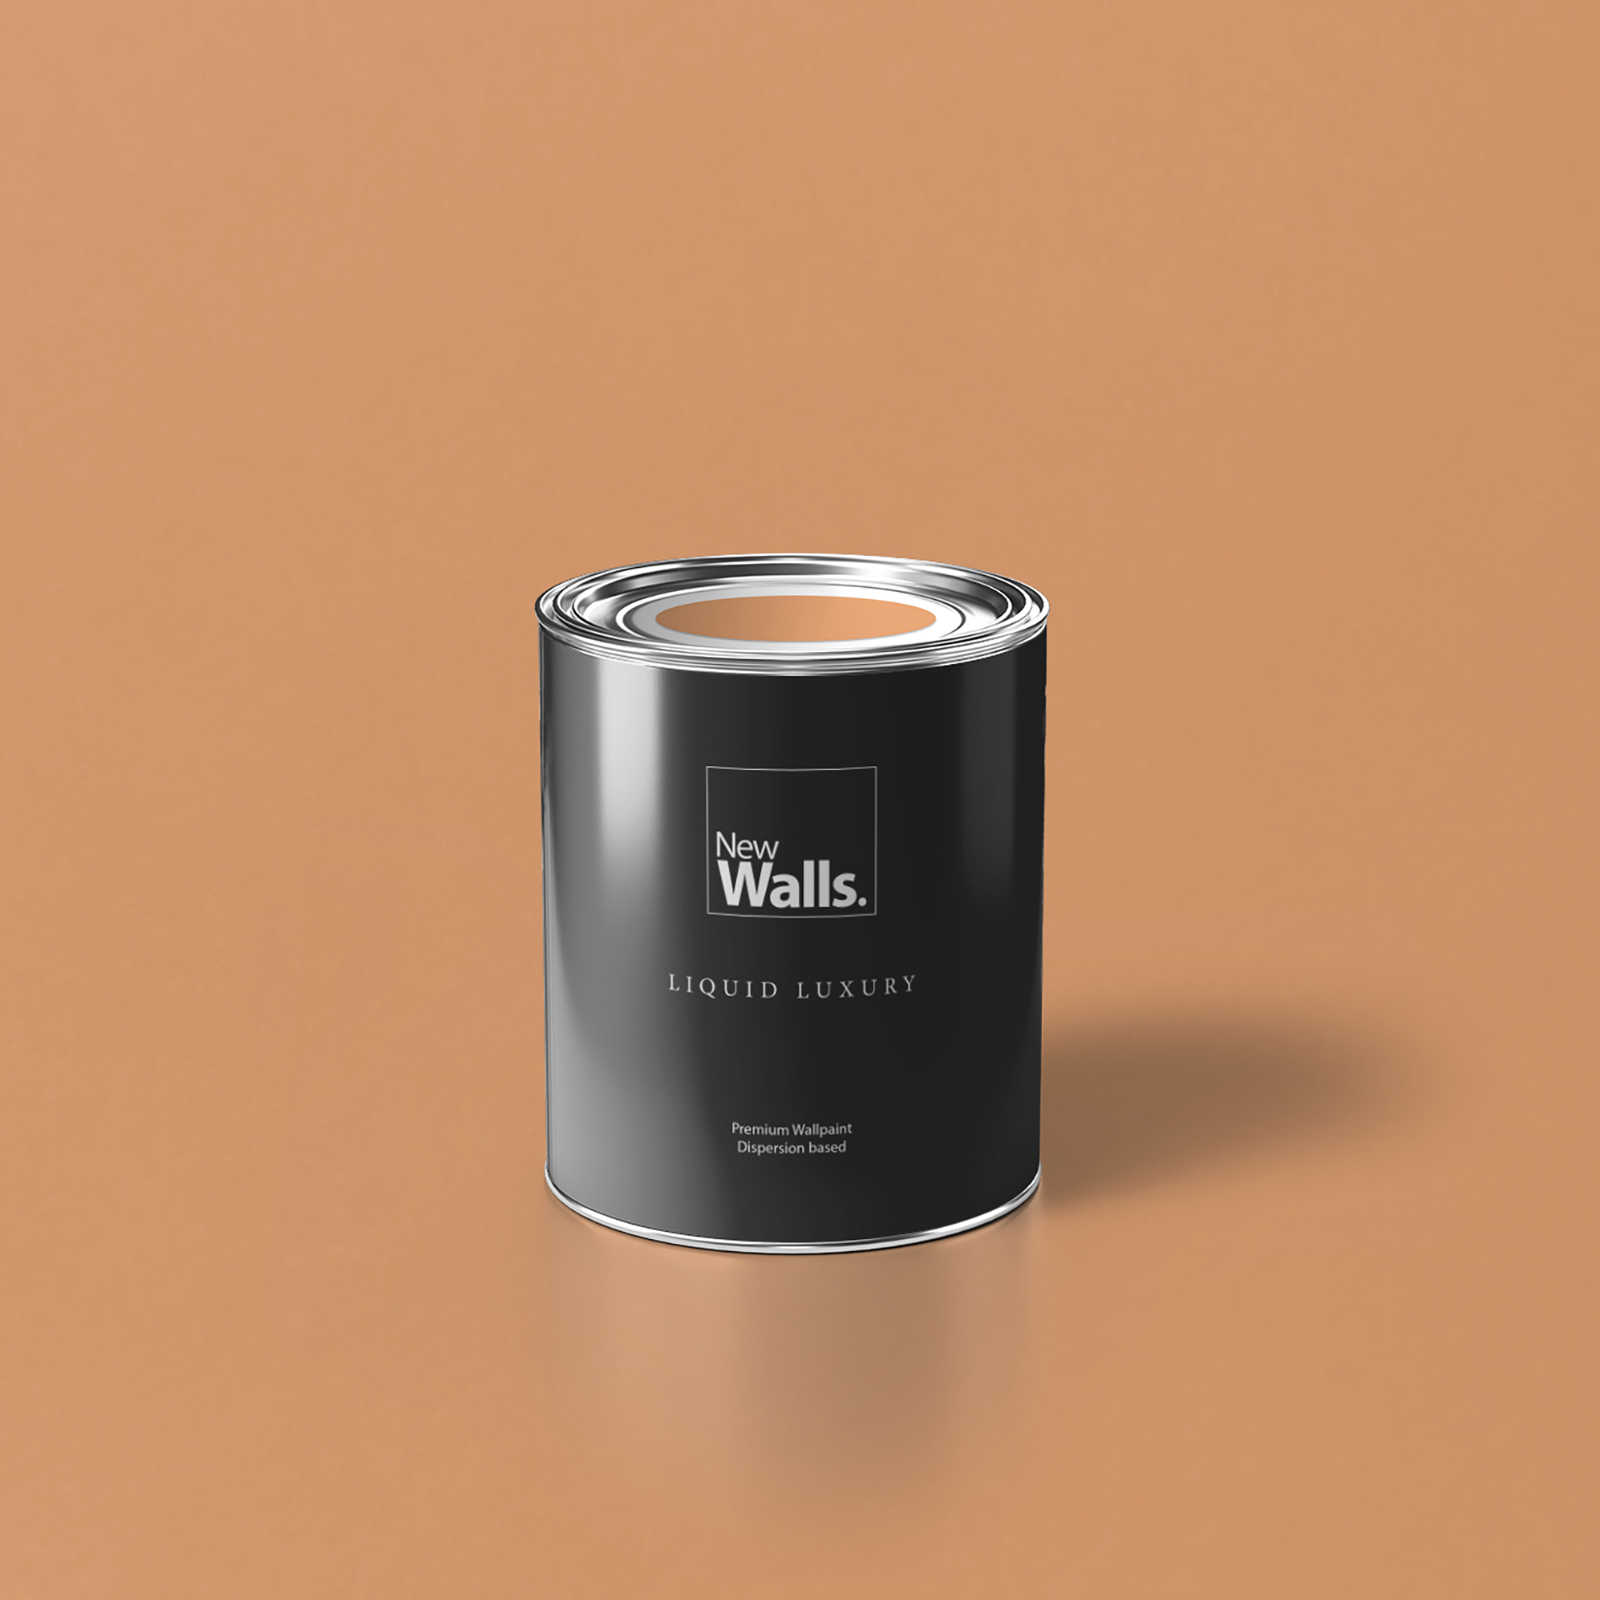         Premium Wandfarbe aufweckendes Apricot »Pretty Peach« NW901 – 1 Liter
    